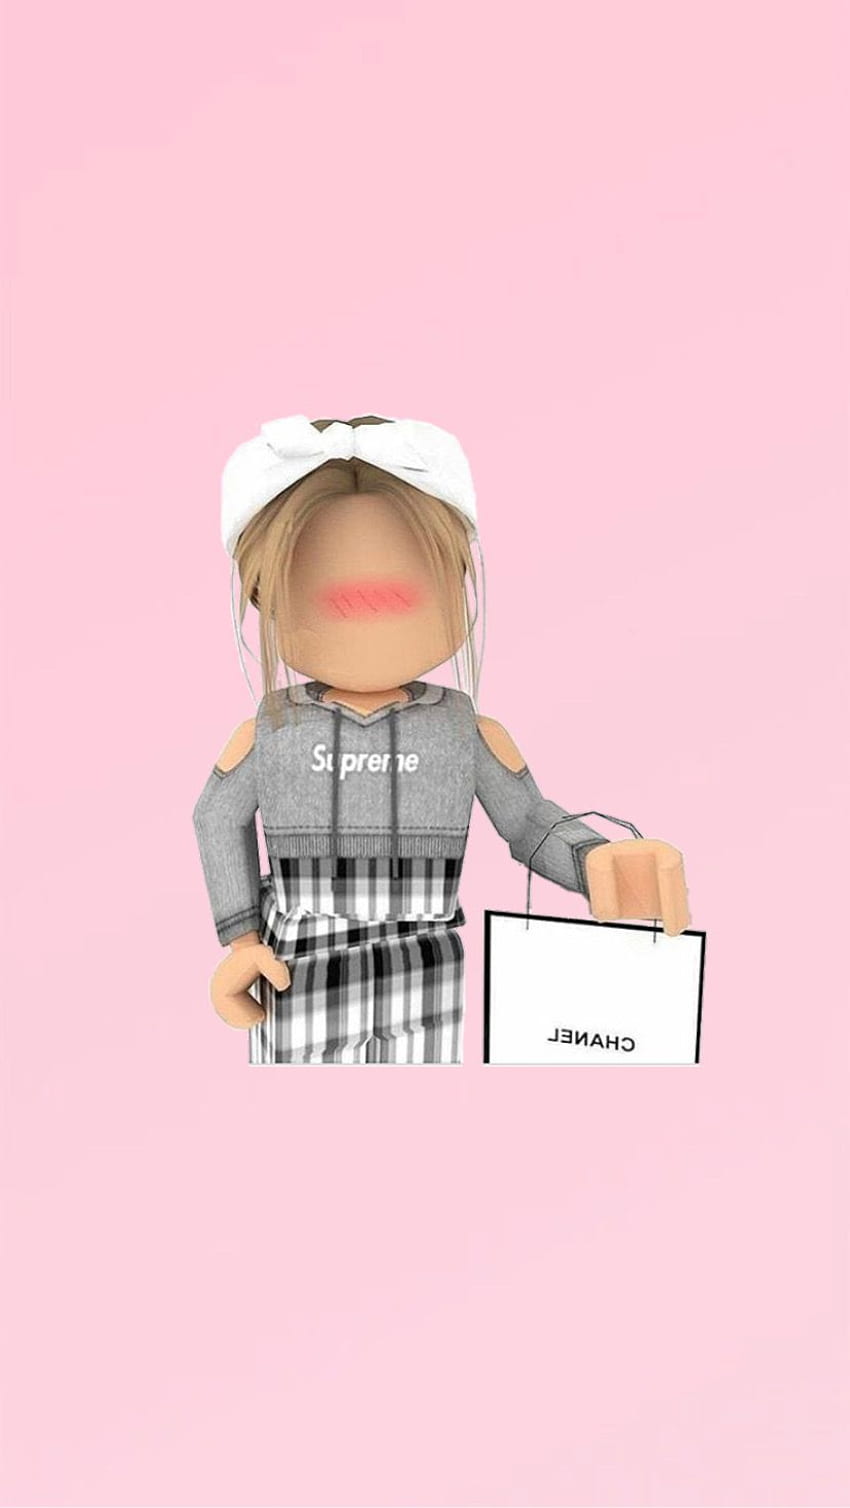 Gfx girl in 2020. Roblox animation, Cute tumblr , Roblox, Cute Roblox Girls  HD phone wallpaper